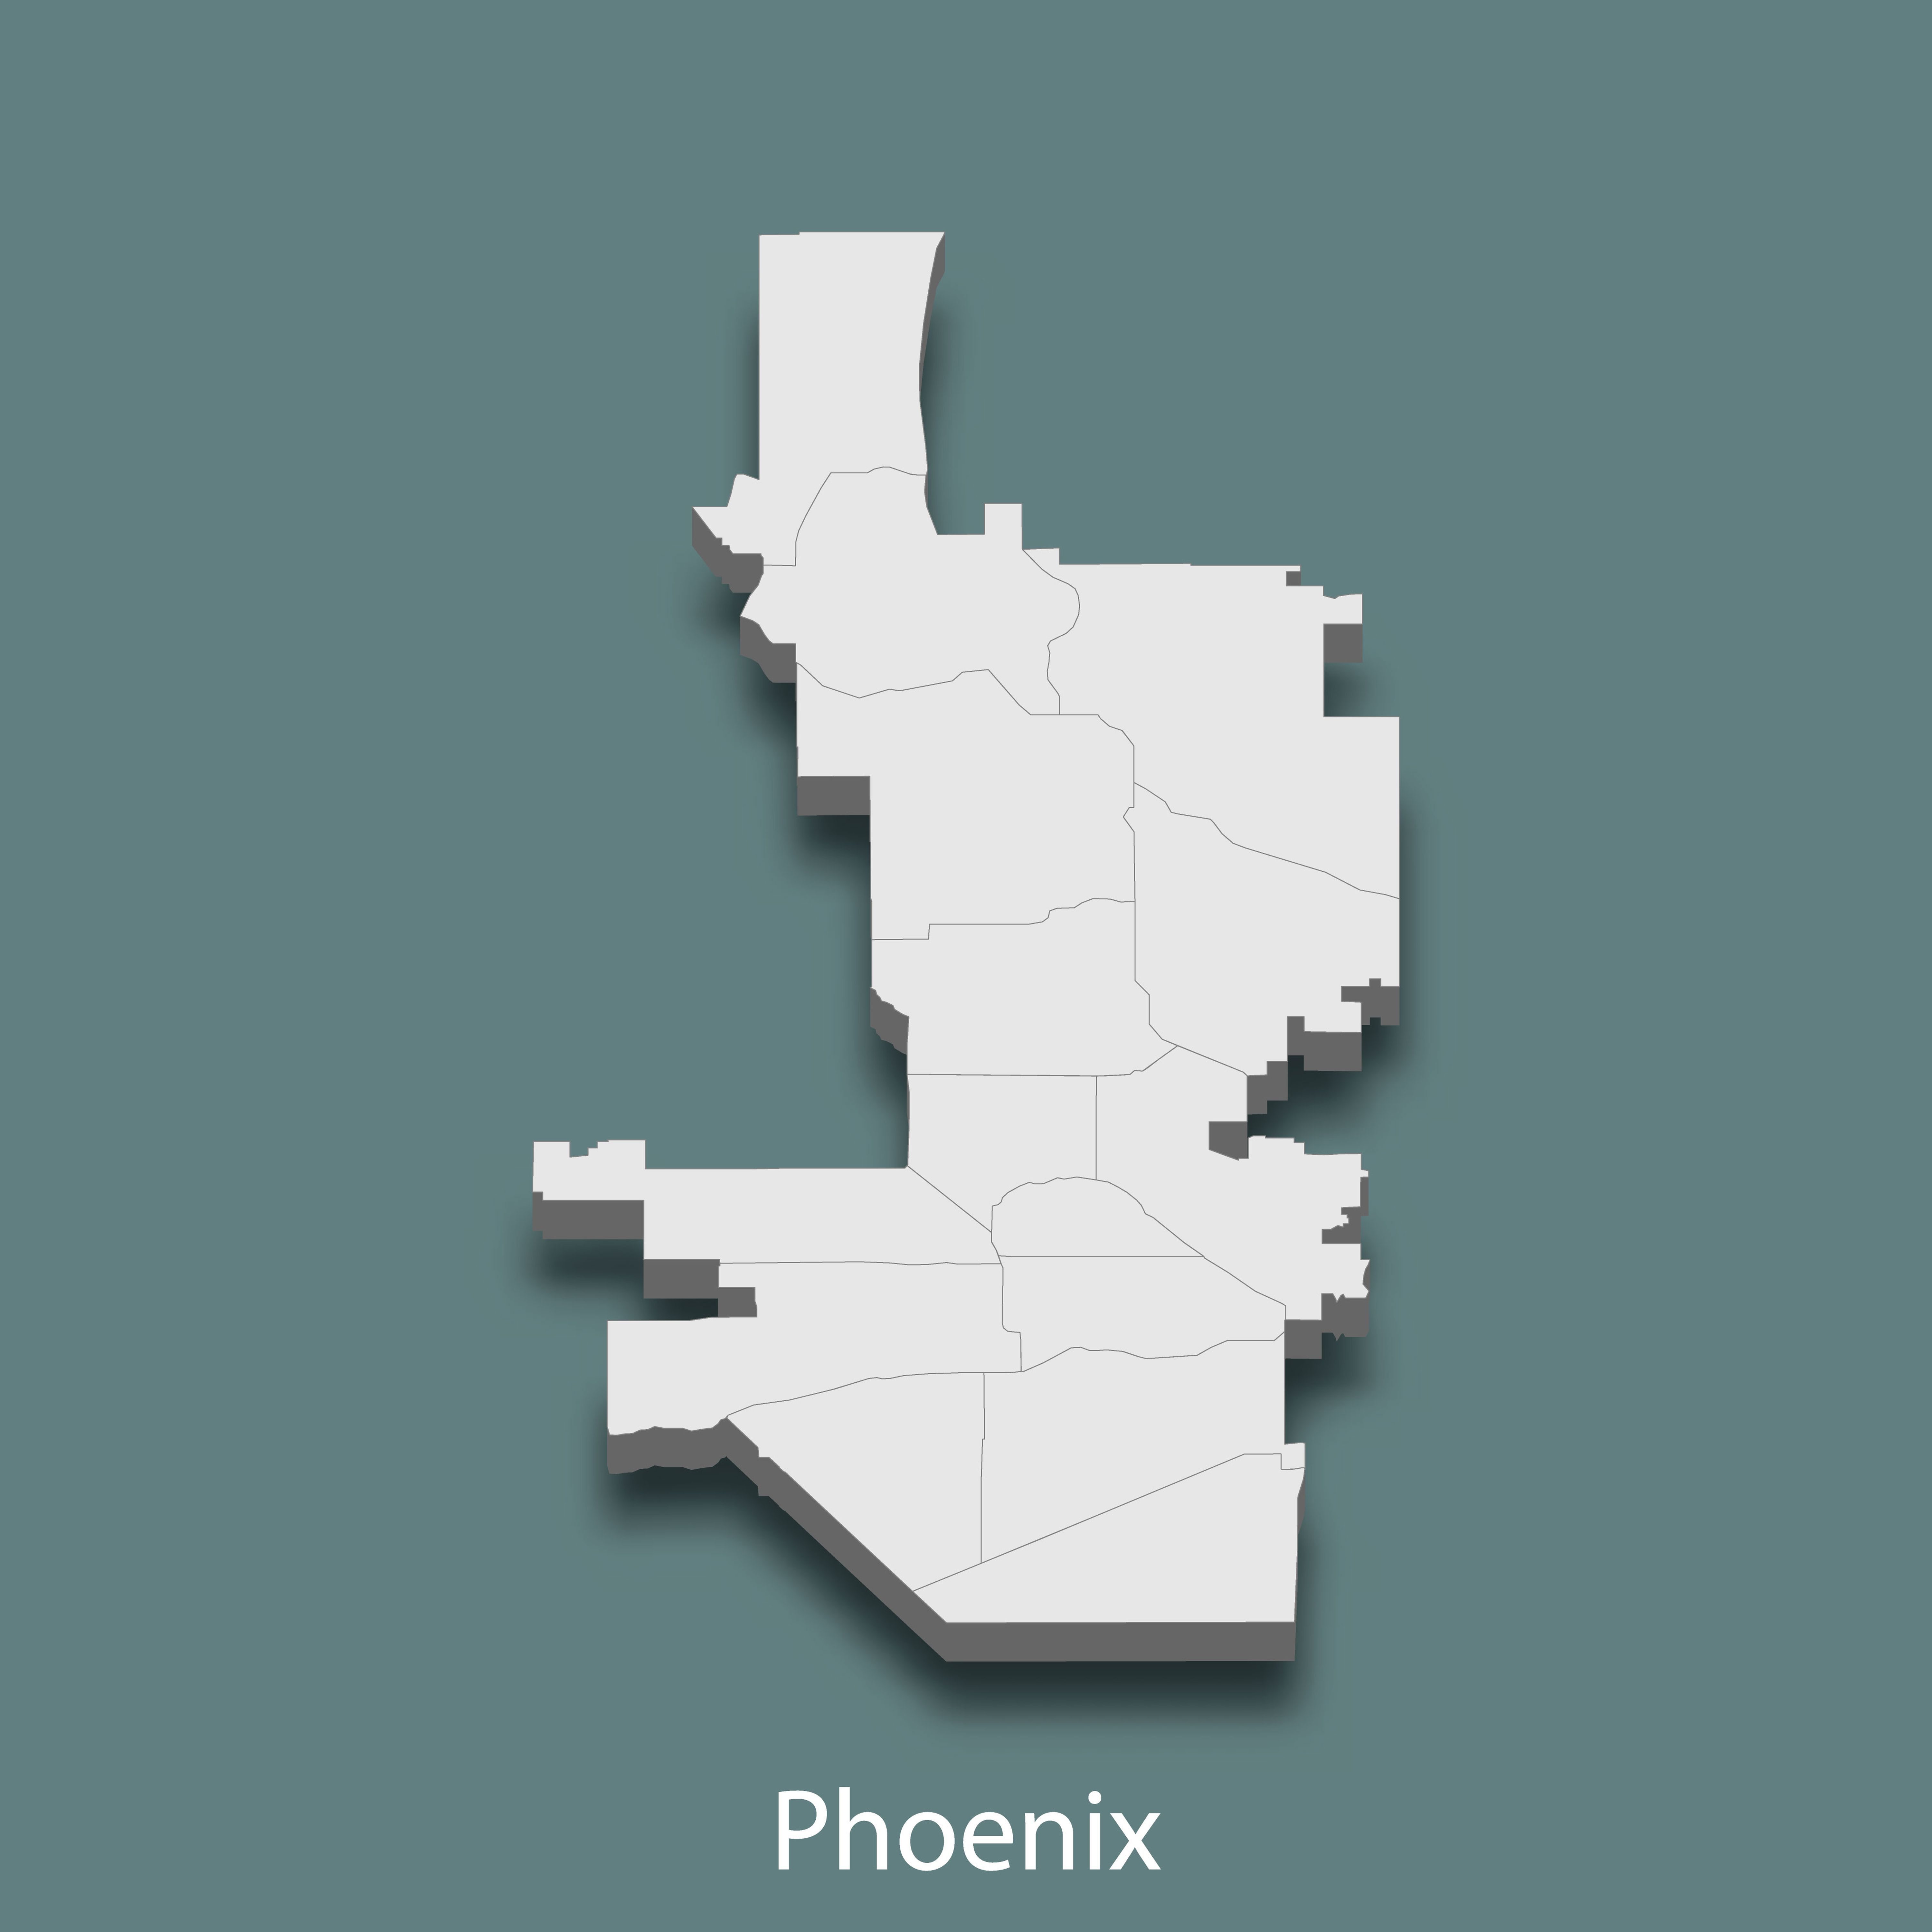 phoenix Area Codes 602, 480, & 623